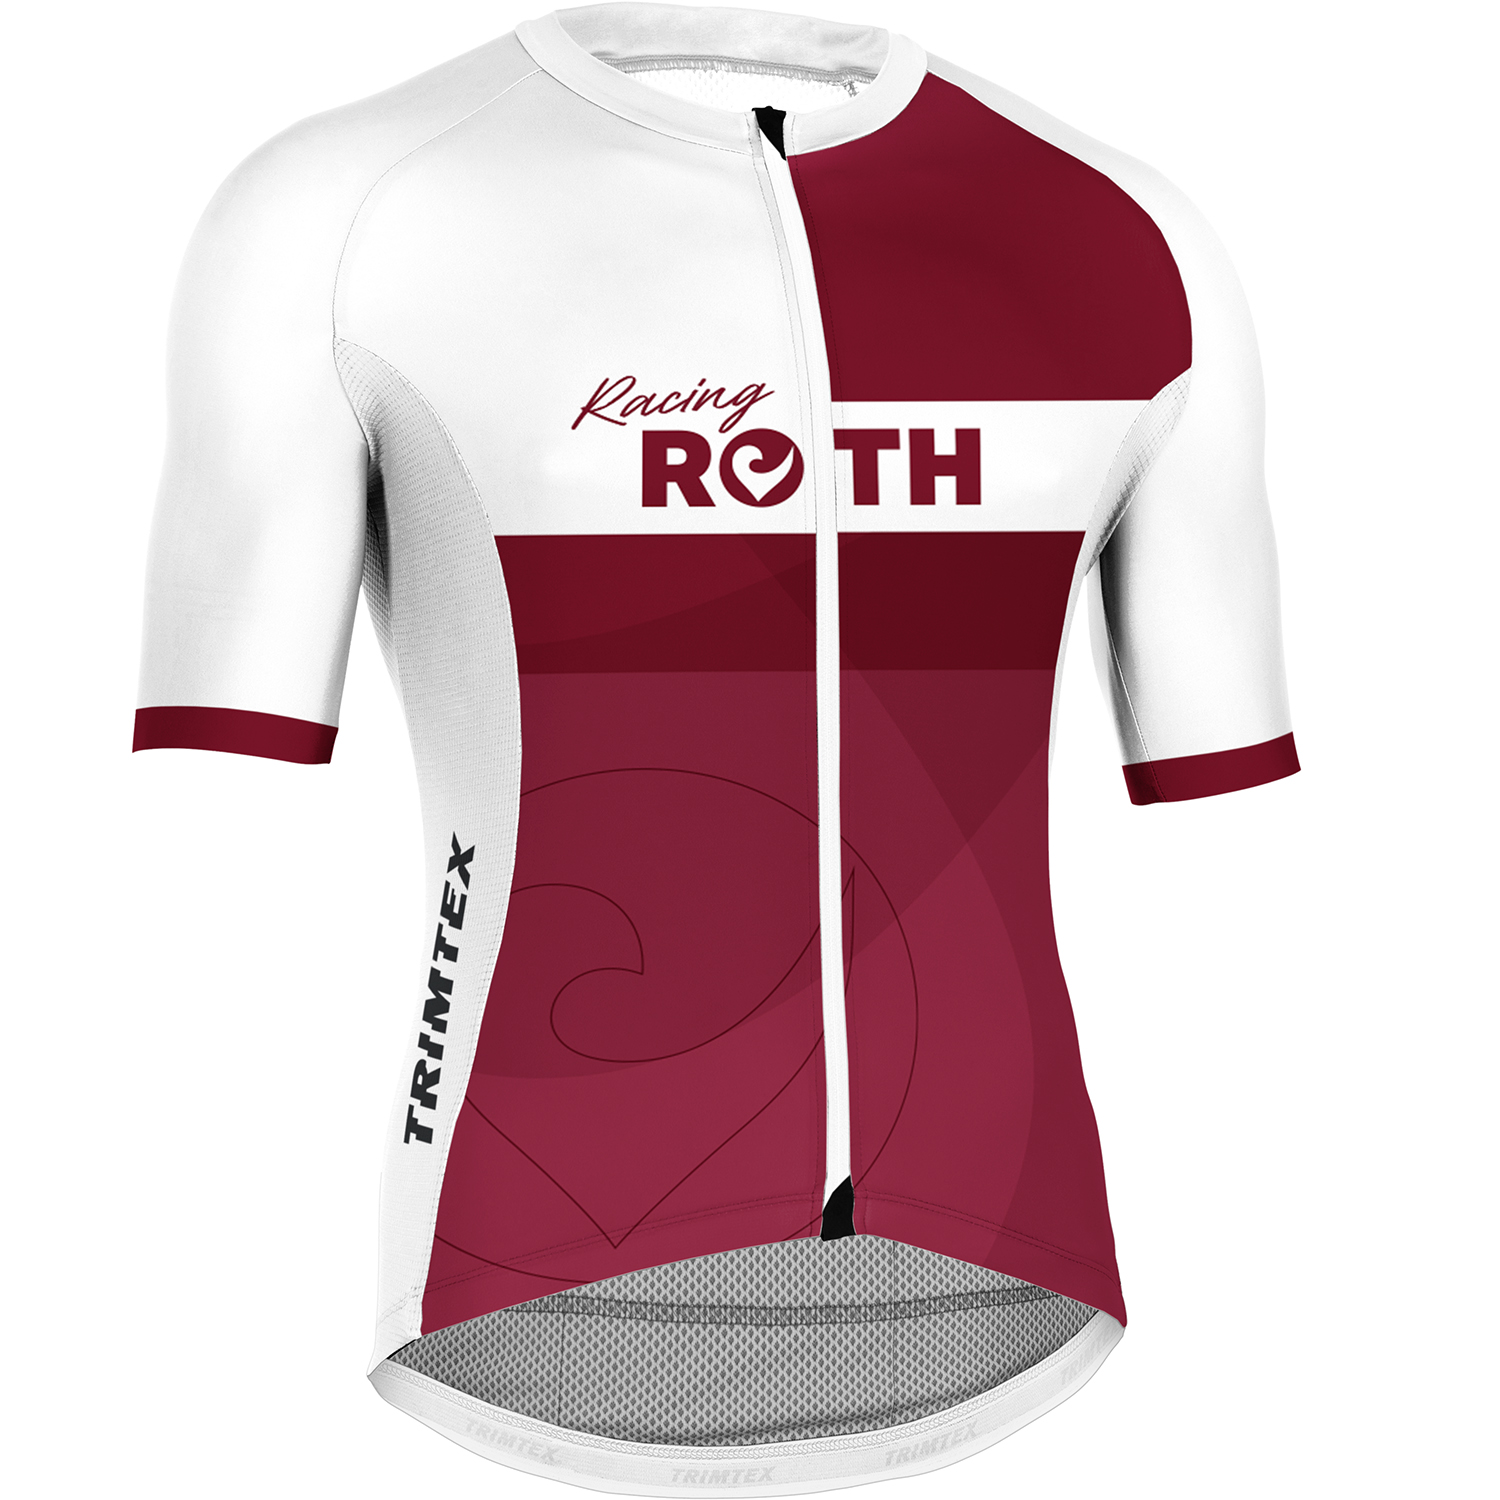 TRIMTEX Cycling Shirt Vitric 2.0 RACING ROTH